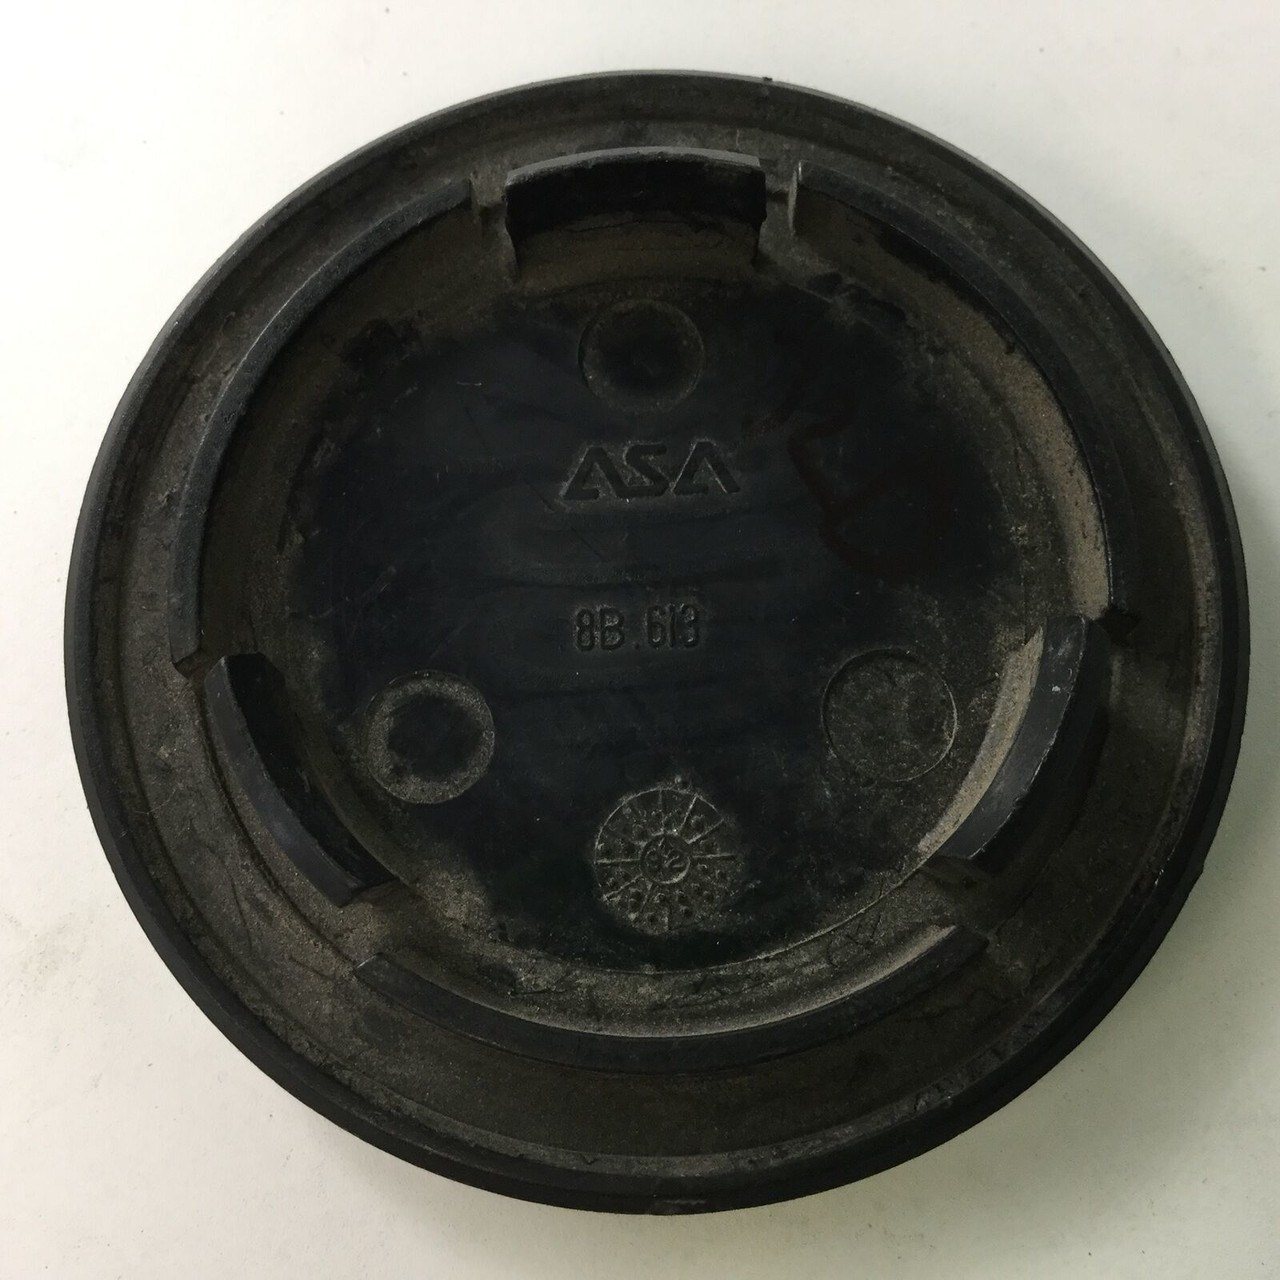 ASA Hyundai Custom Wheel Center Cap Black 8B613 2.625" Diameter ASA32D